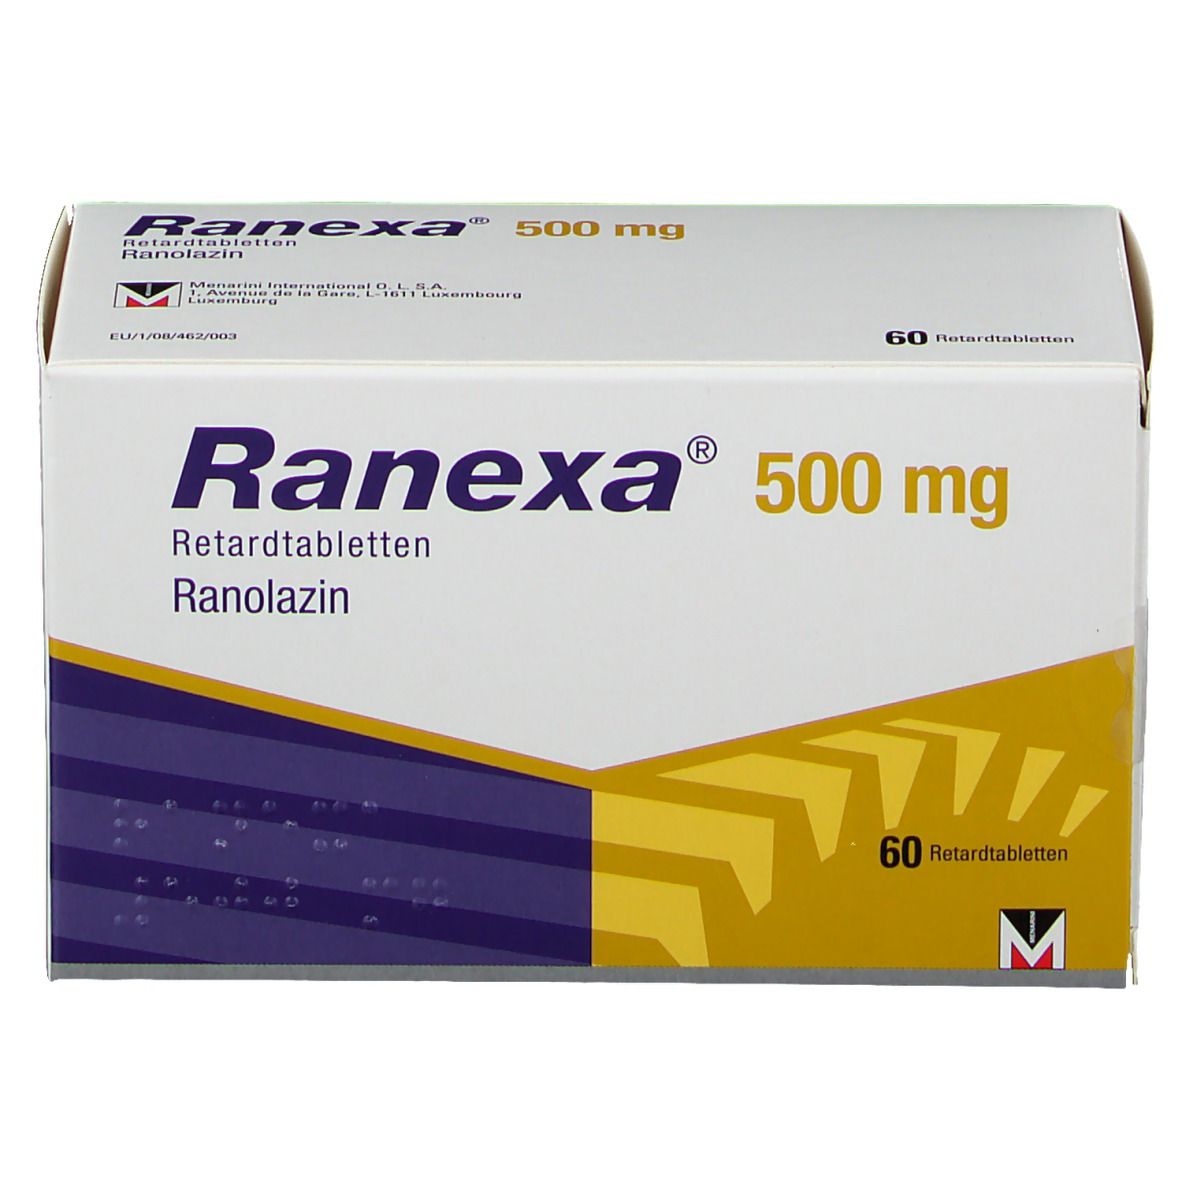 Ranexa® 500 mg